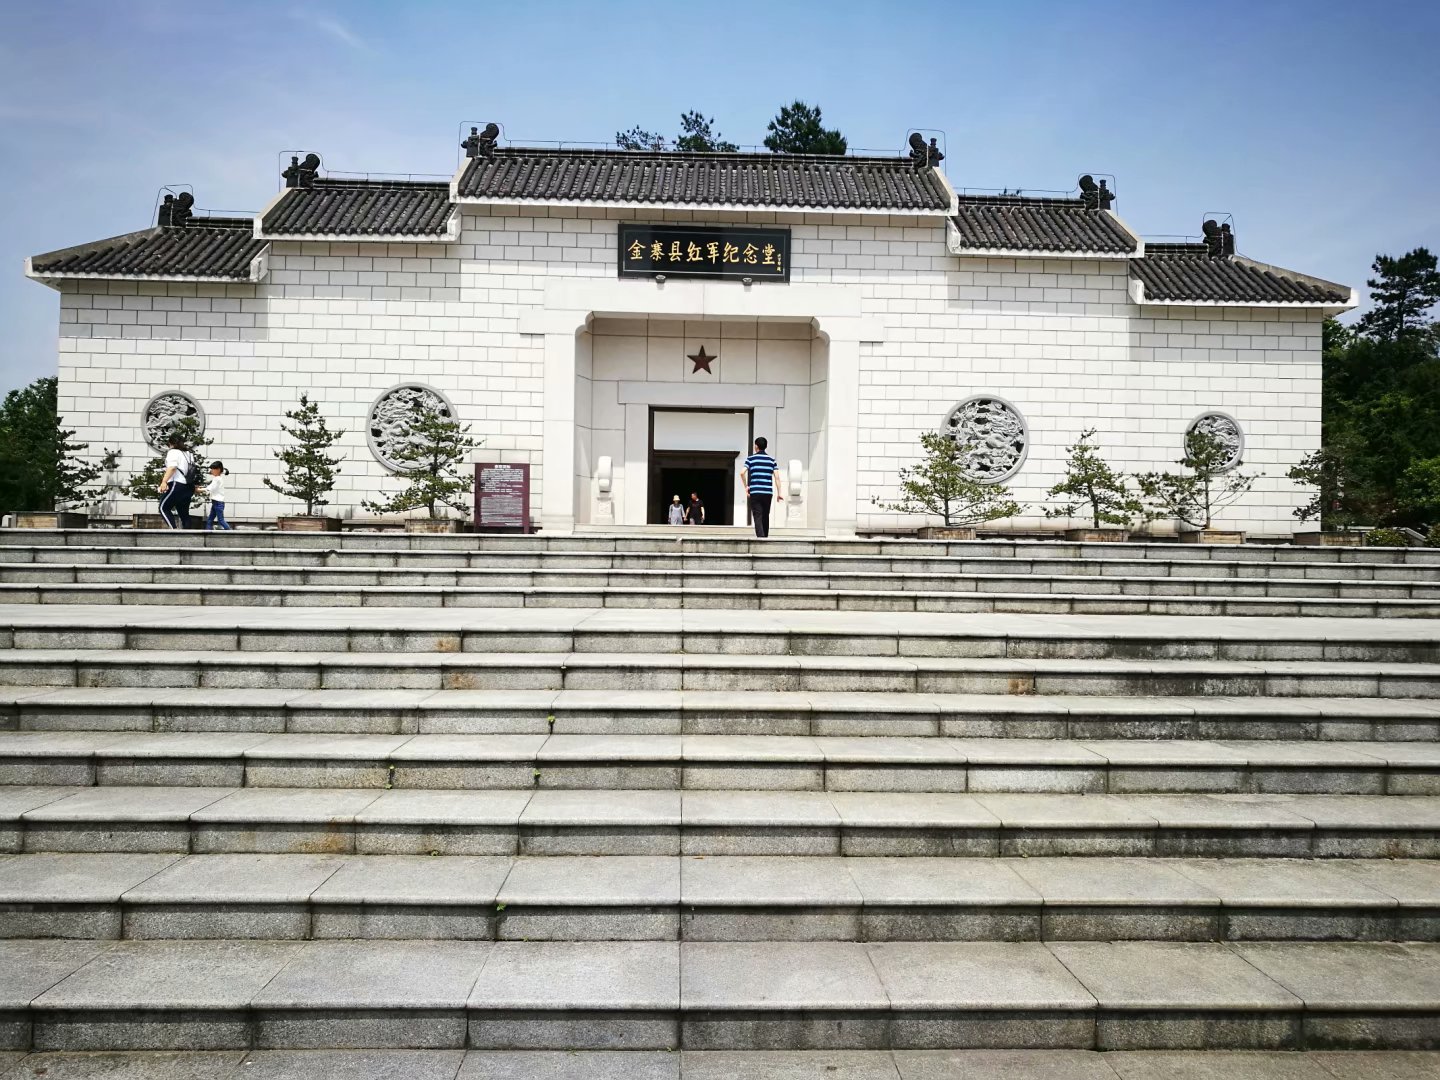 位于老县城所在地梅山镇的革命烈士陵园是游客们必到的地方,这里包含